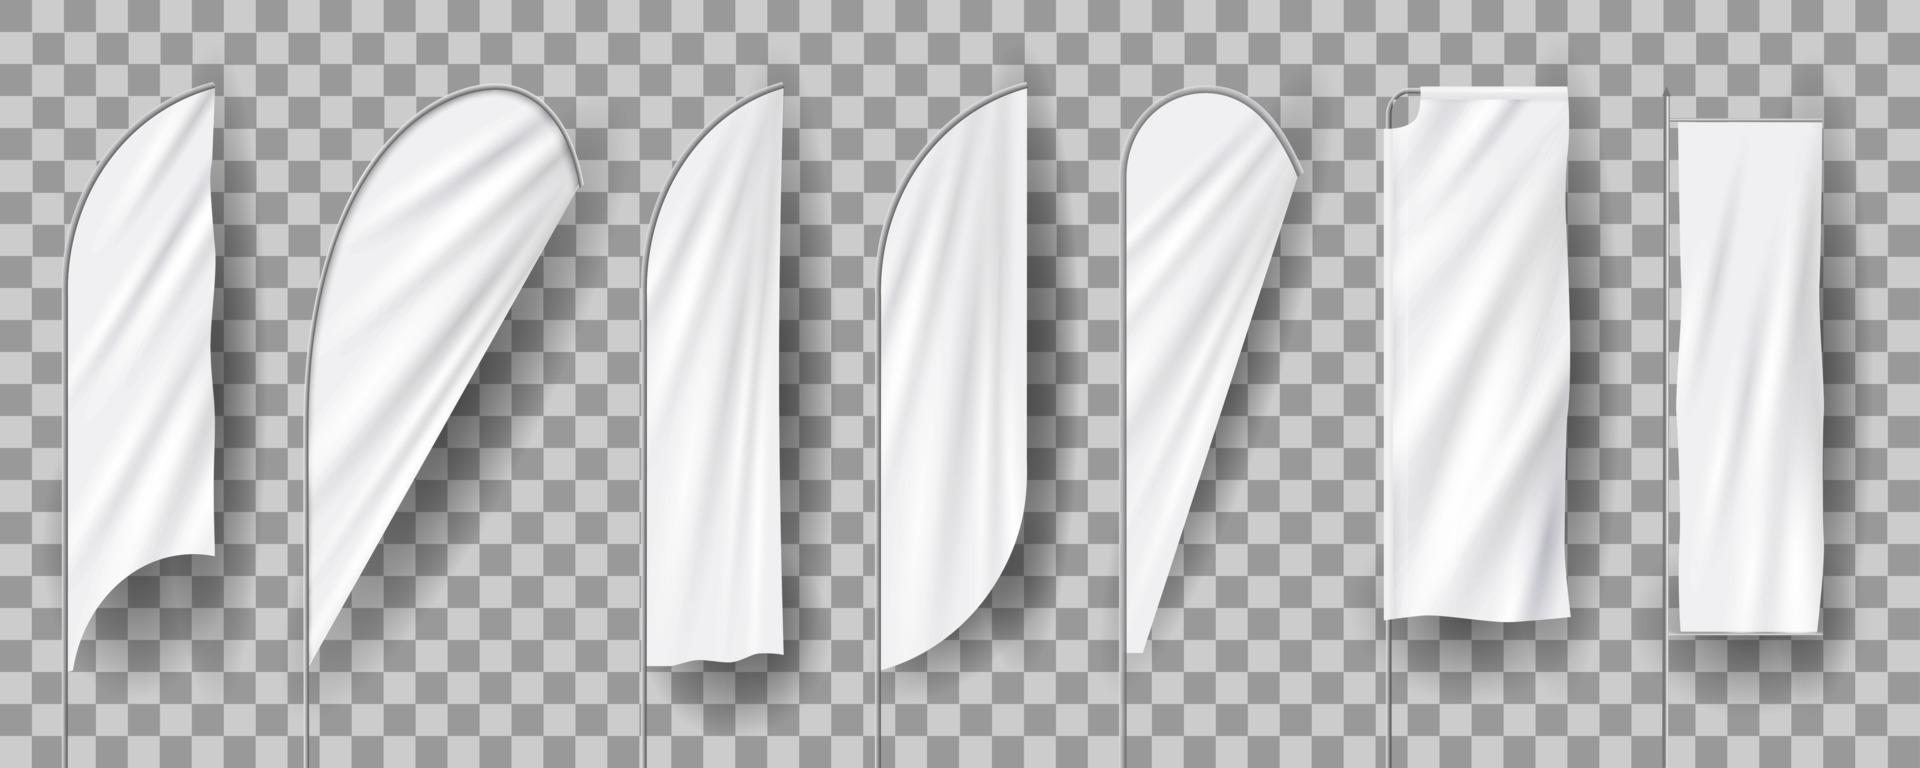 vita tomma fjäderflaggor, vertikala banderoller, 3d-realistisk mockup vektor